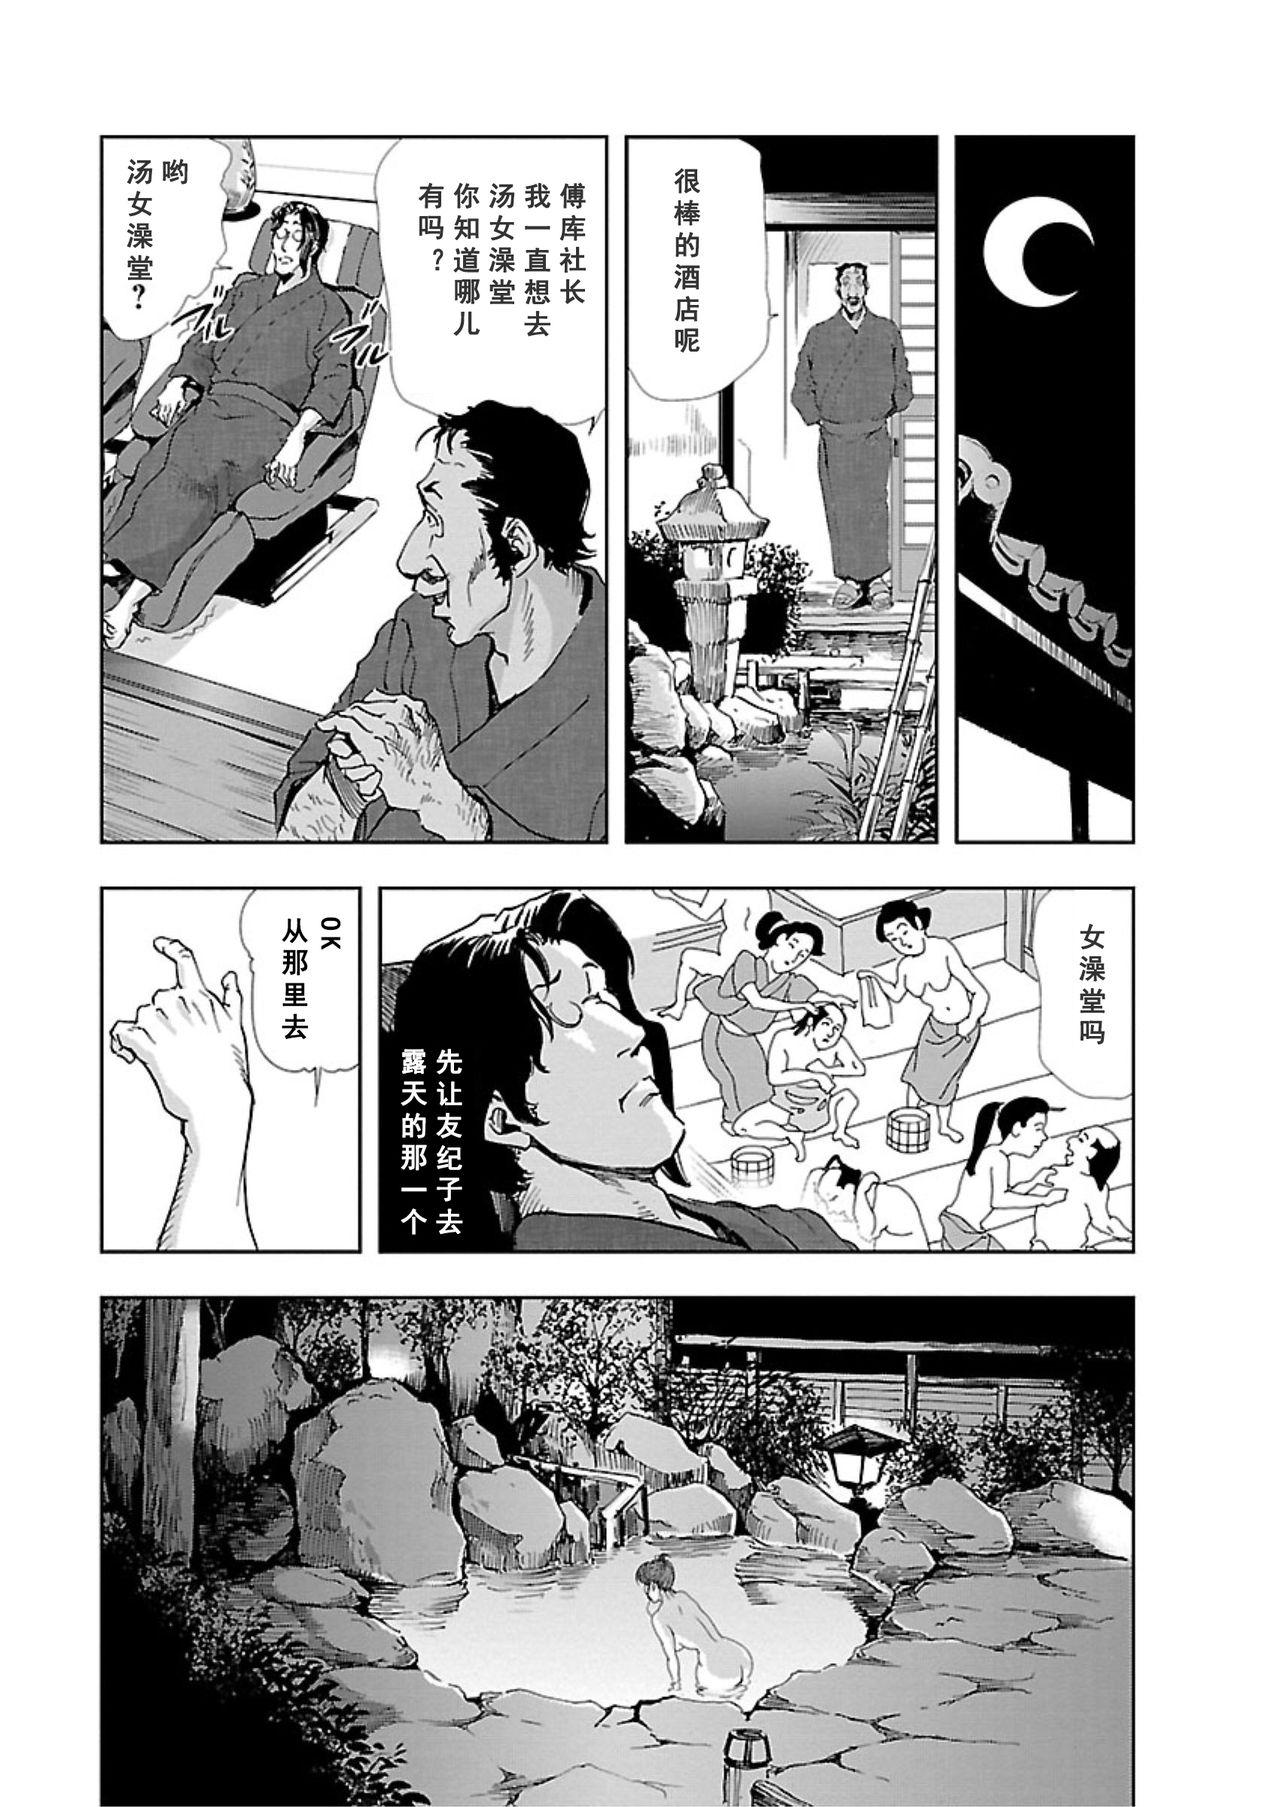 【不可视汉化】[Misaki Yukihiro] Nikuhisyo Yukiko chapter 05  [Digital] 8